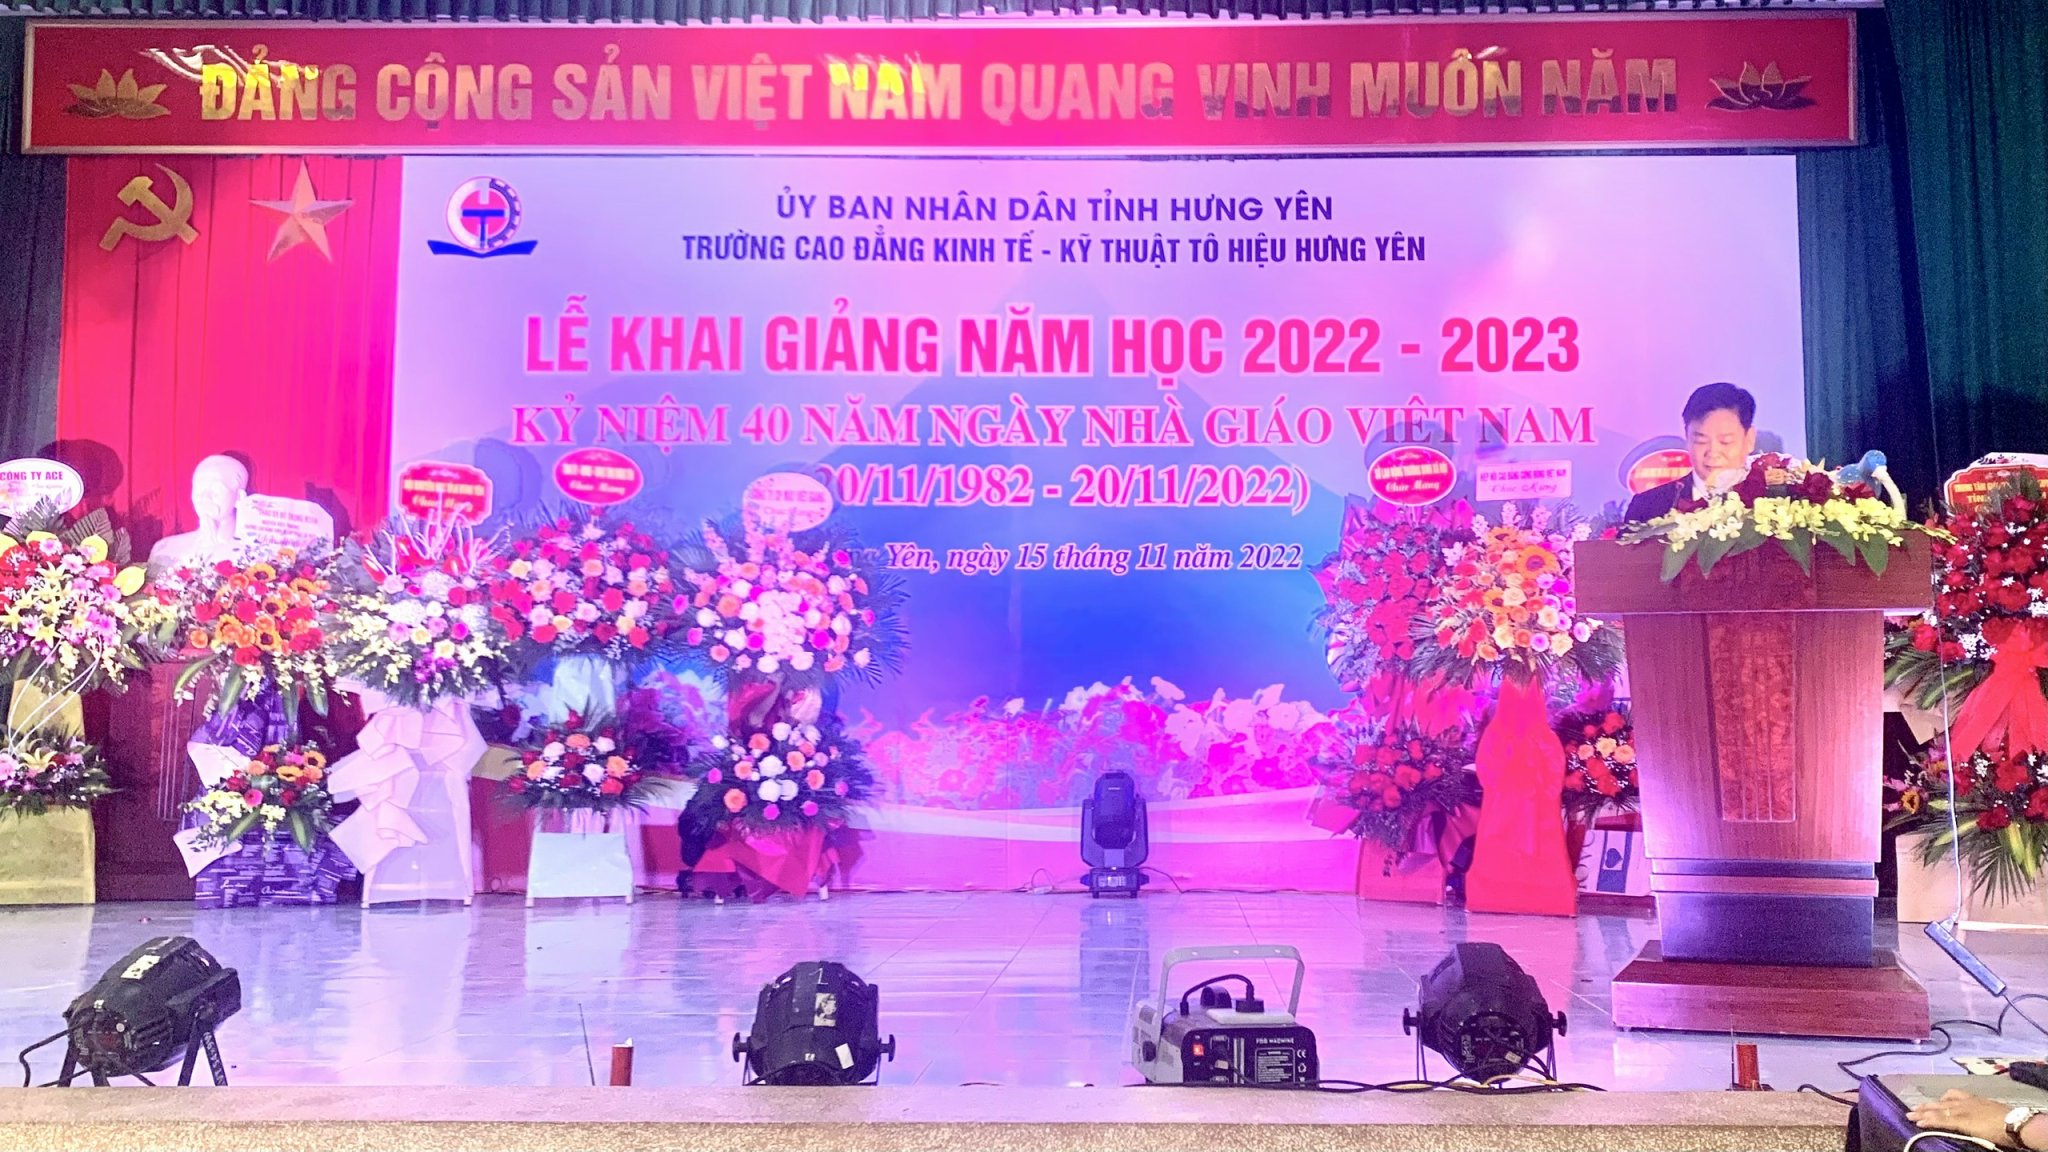 Lễ khai giảng năm học 2022 – 2023 và kỷ niệm 40 năm ngày Nhà giáo Việt Nam (20/11/1982- 20/11/2022)